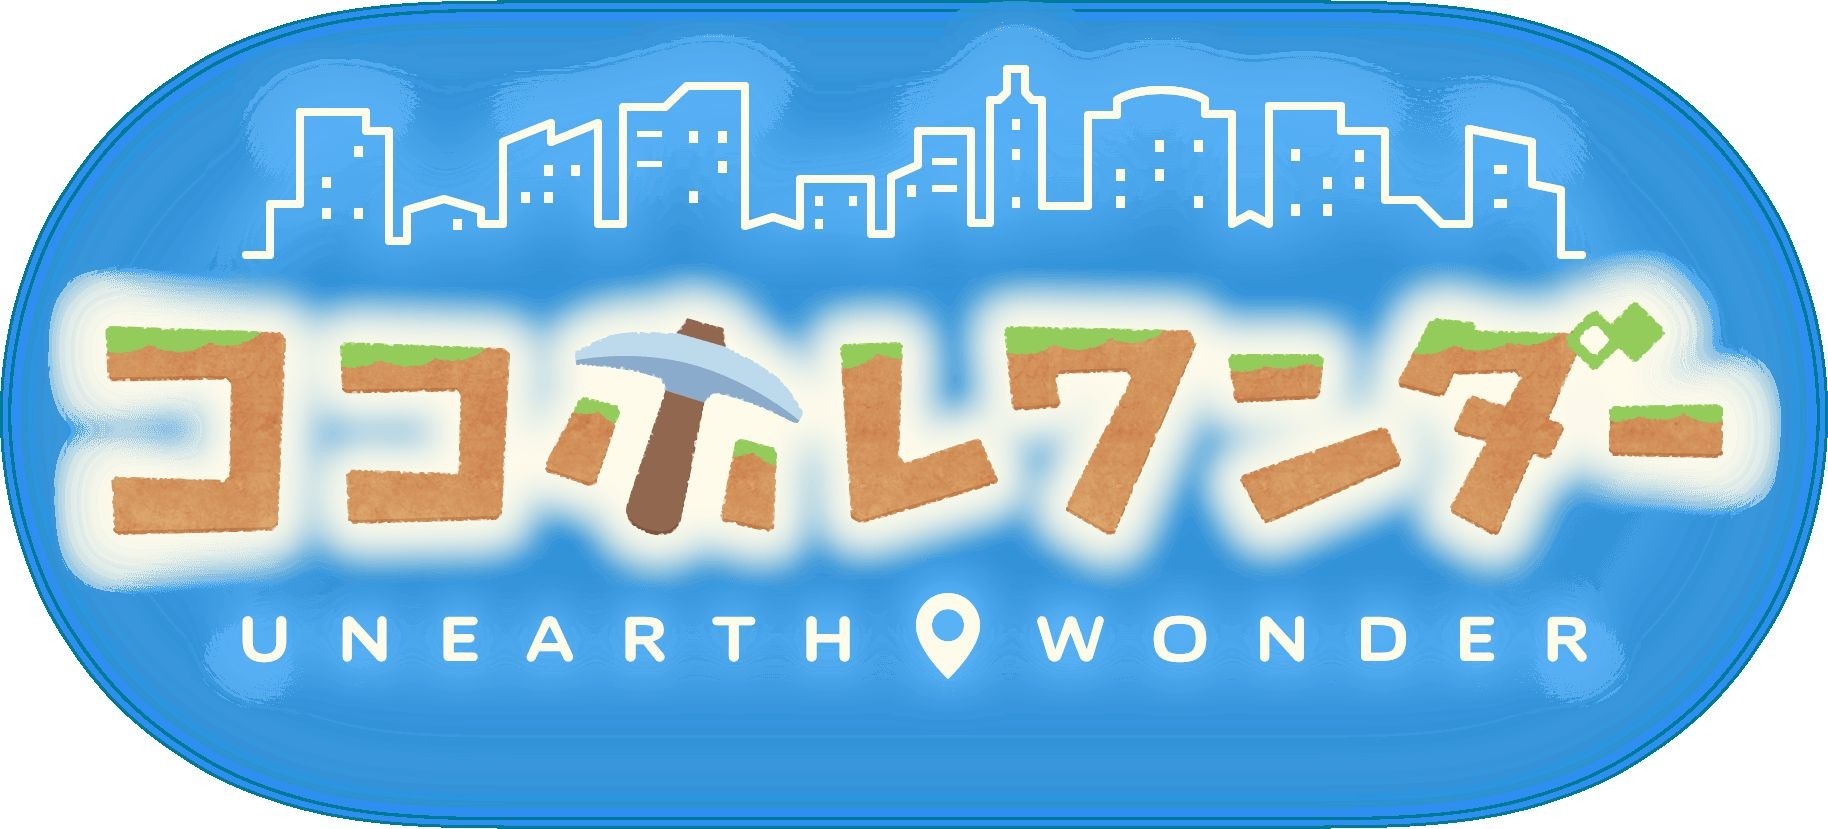 位置情報遊戲新作《Unearth Wonder》2022 年推出 藉由挖地洞找回失落的人類文明